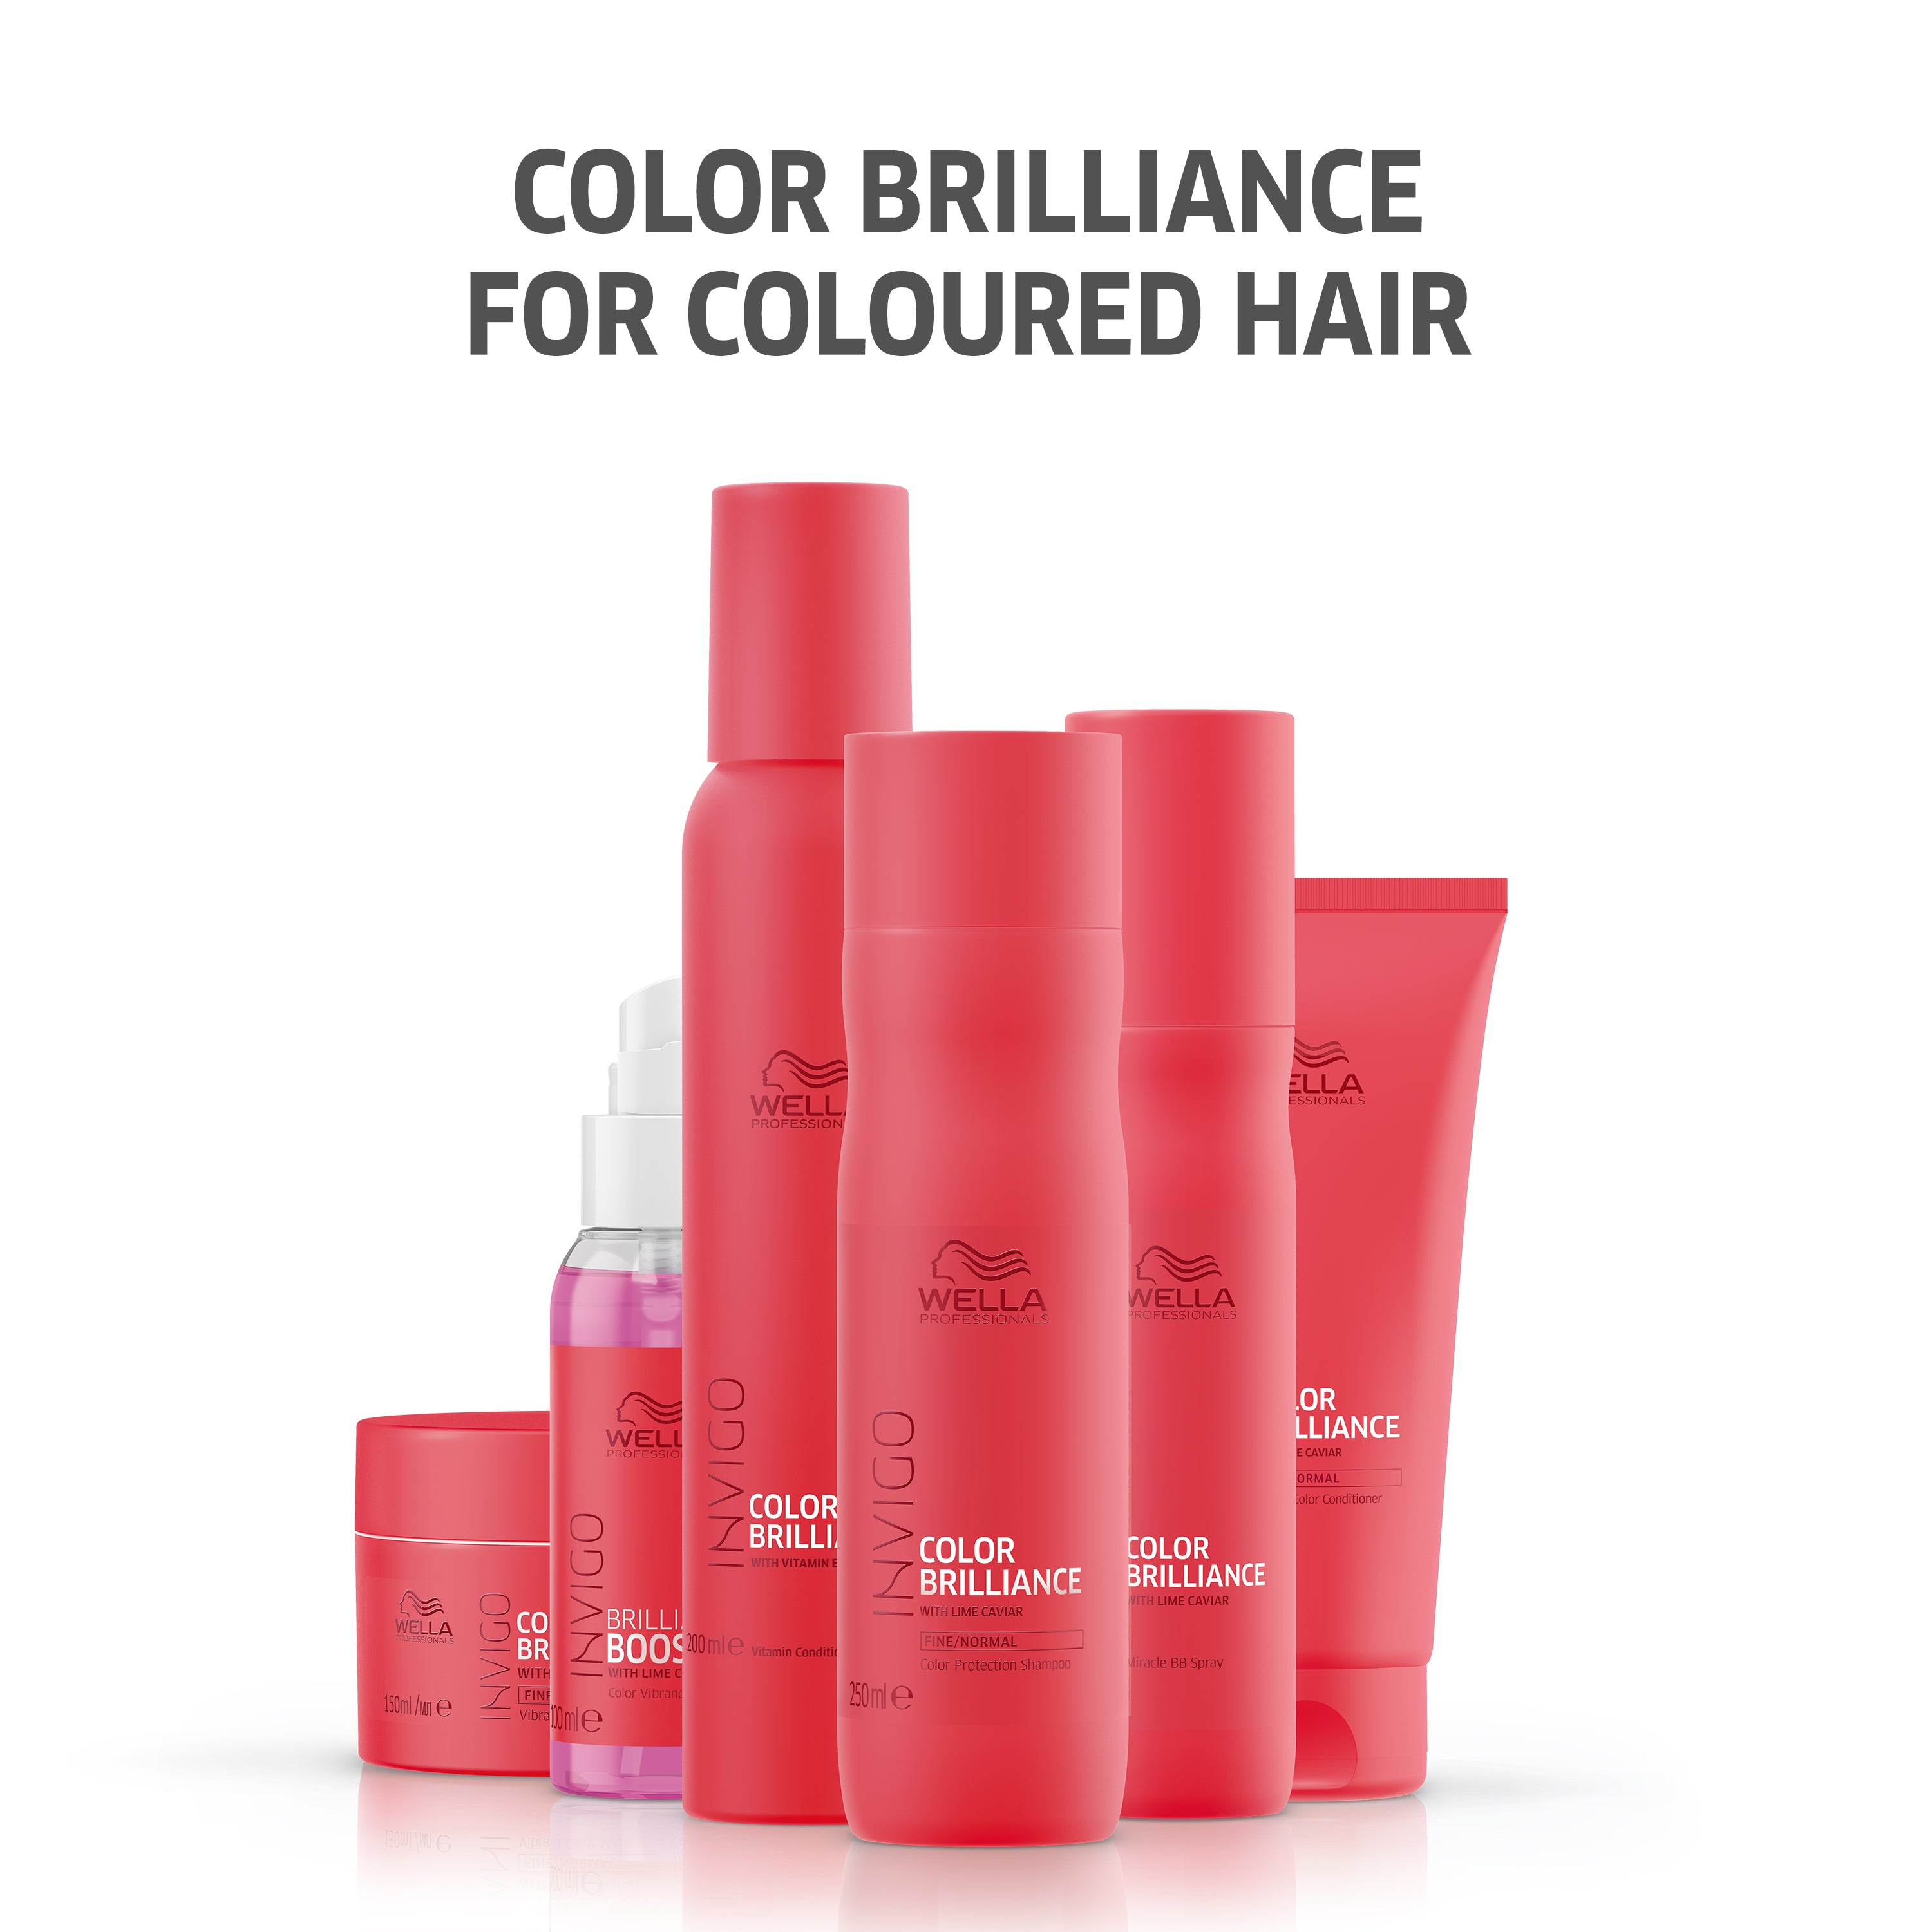 Wella Professional Invigo Shampoo 50 ML Brilliance Fine